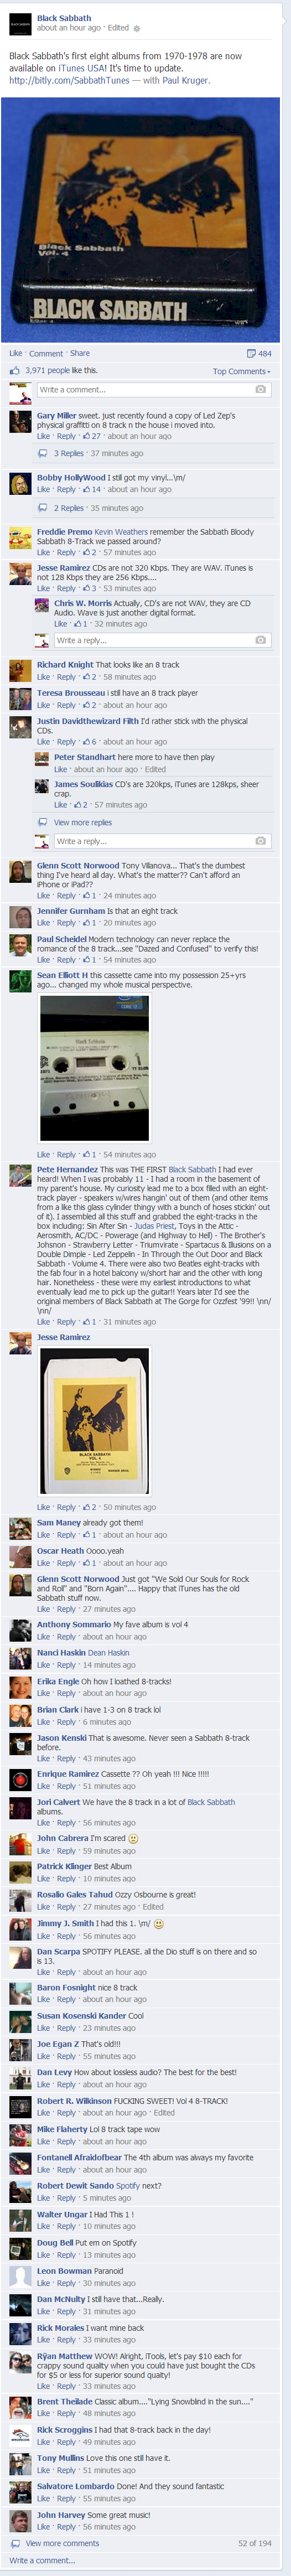 Screenshot - Black Sabbath Albums On iTunes Facebook Post Comment Thread